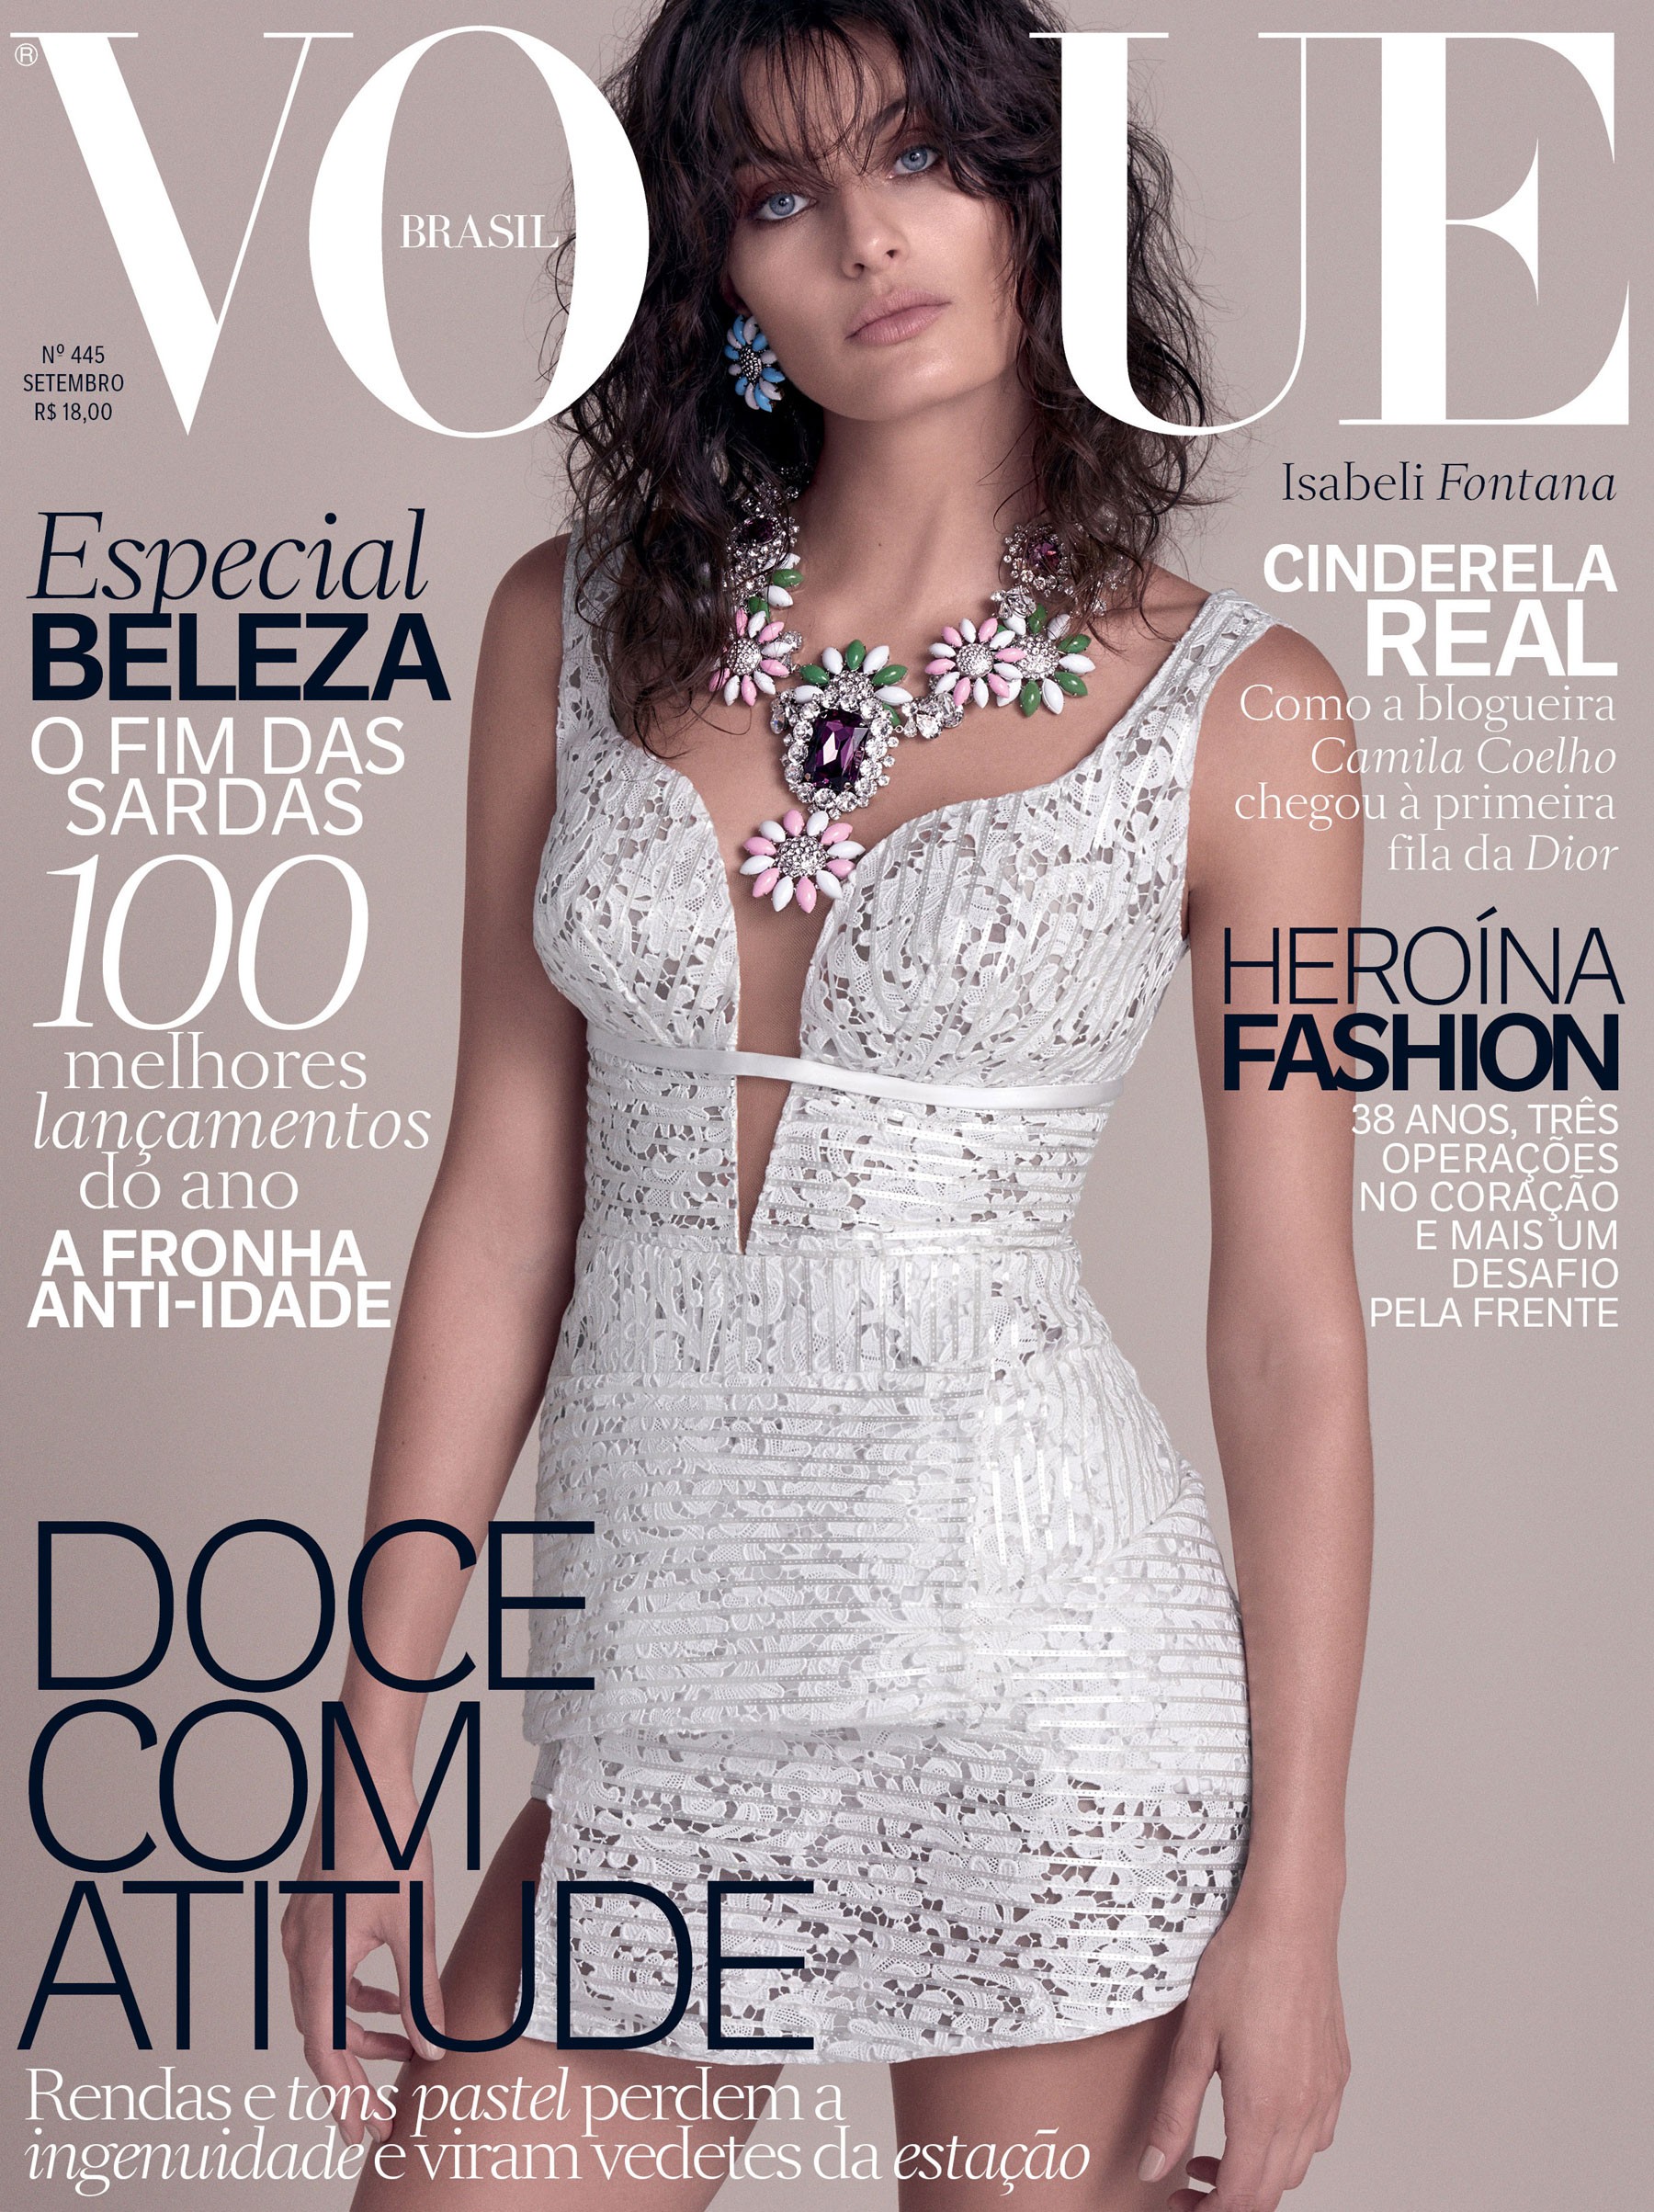 Isabeli Fontana na edição de setembro da Vogue (Foto: Reprodução/Vogue Brasil)